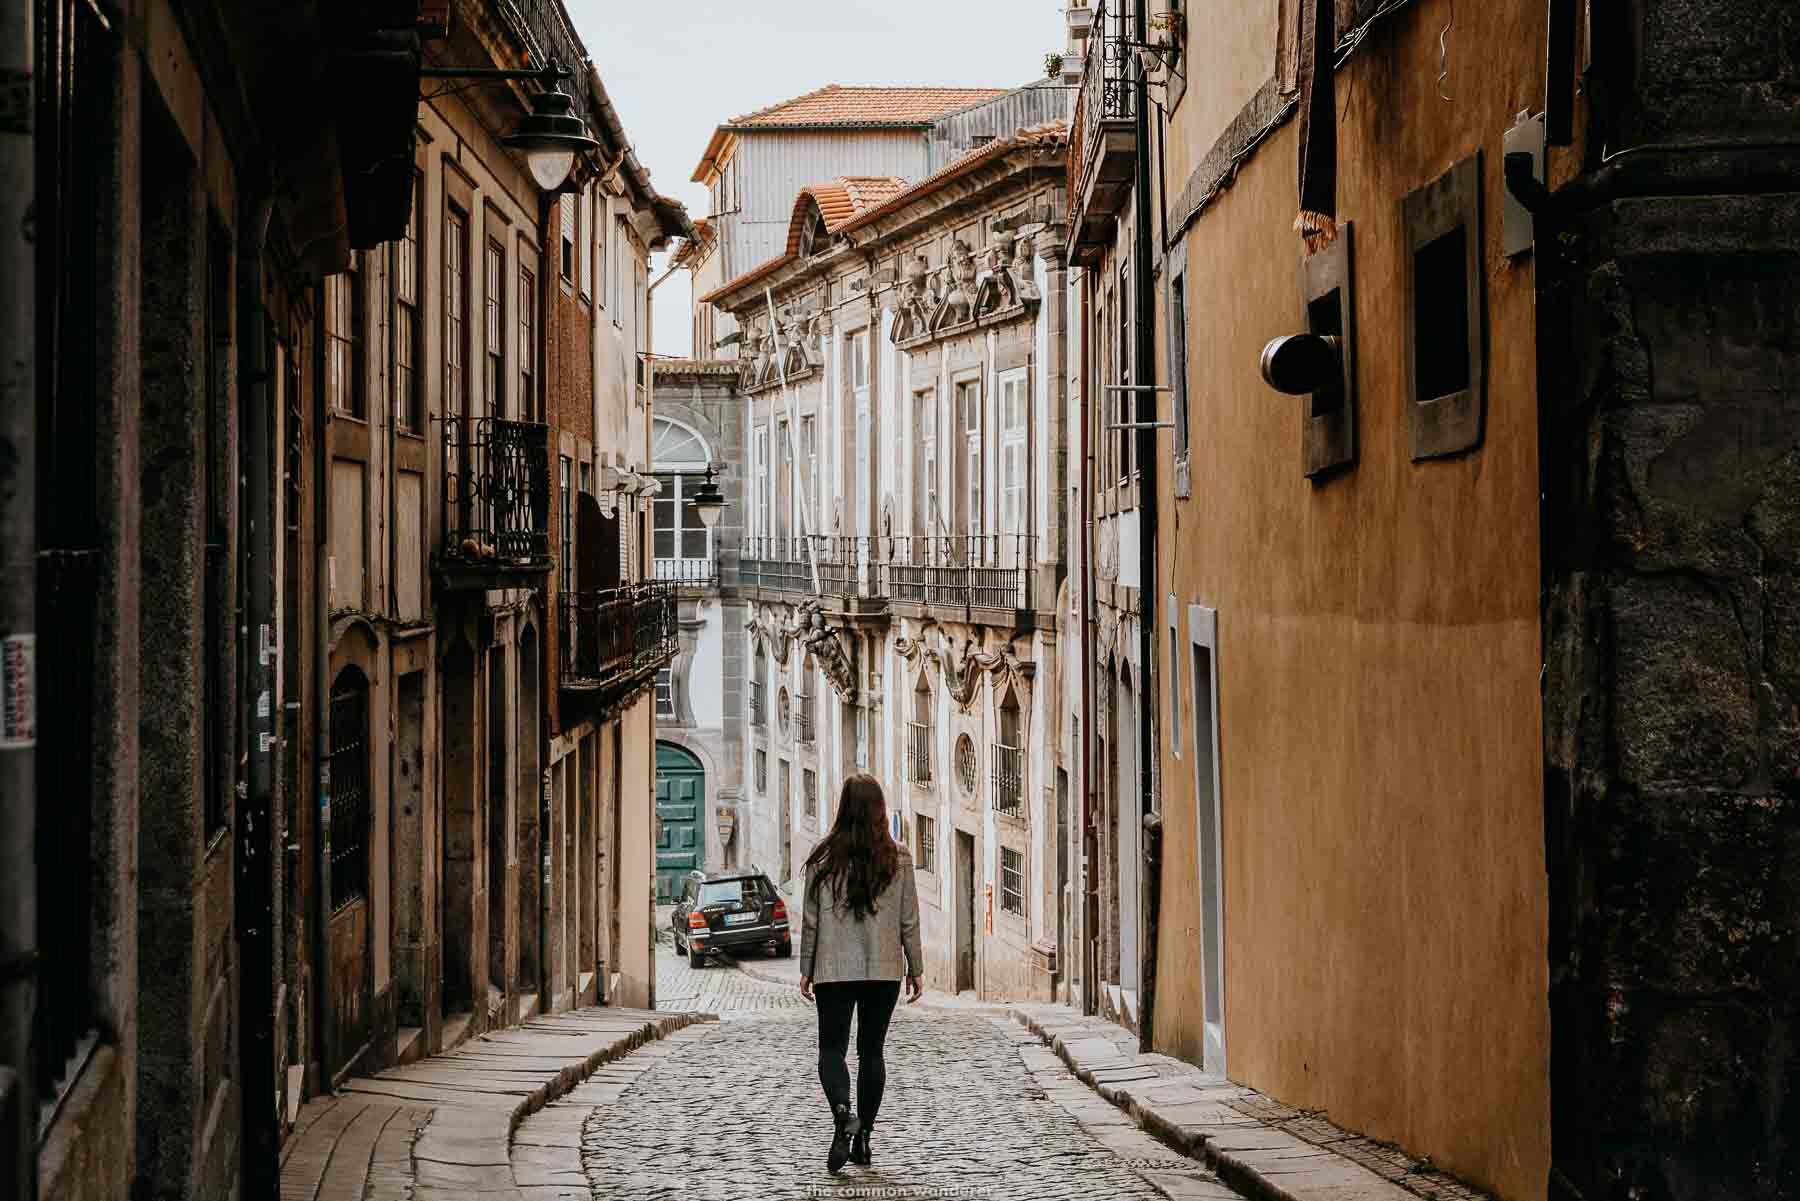 Porto - Portugal Travel Guide